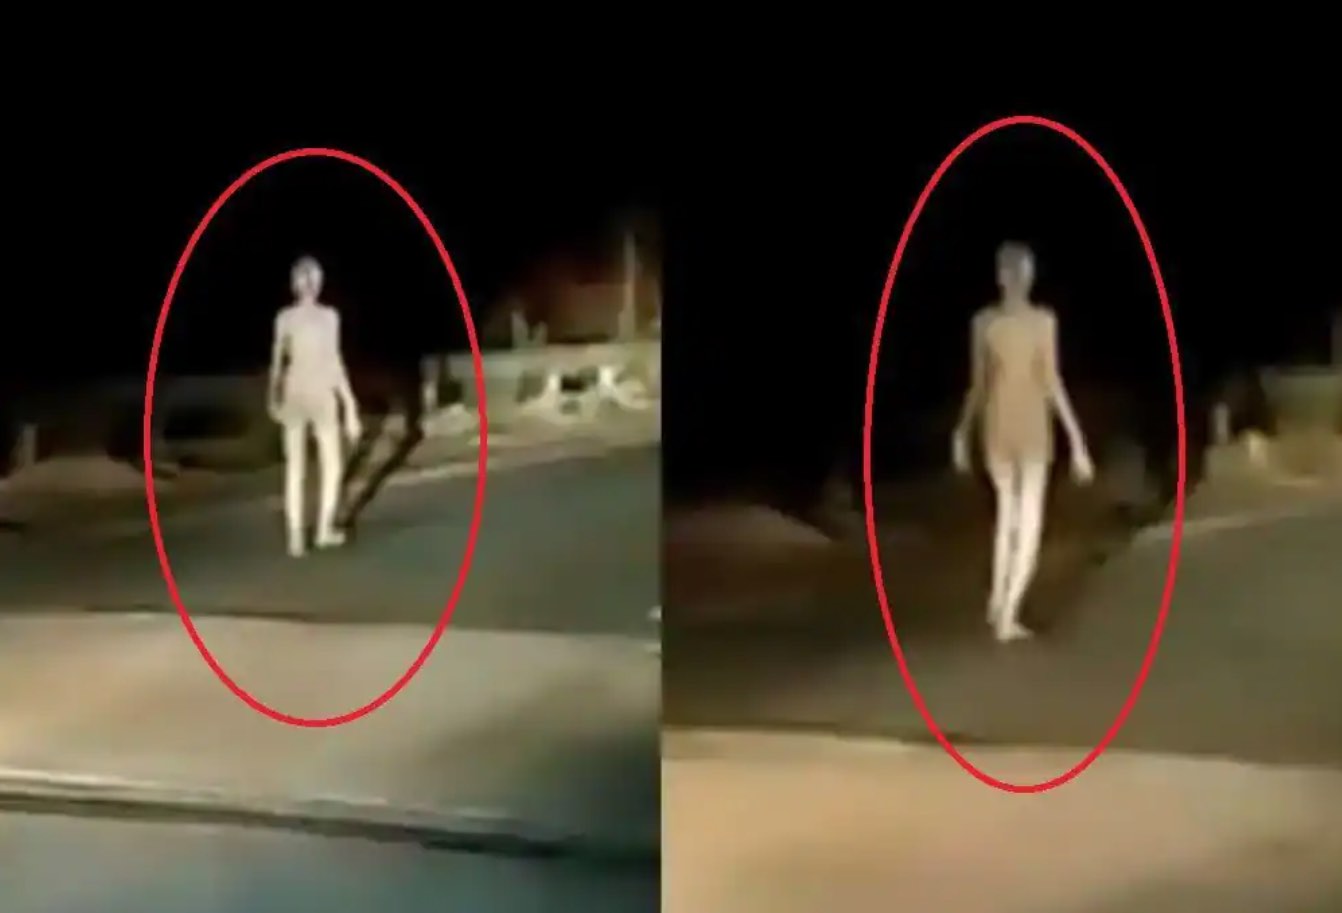 Une créature bizarre ressemblant à un extraterrestre filmée en Inde (VIDEO)